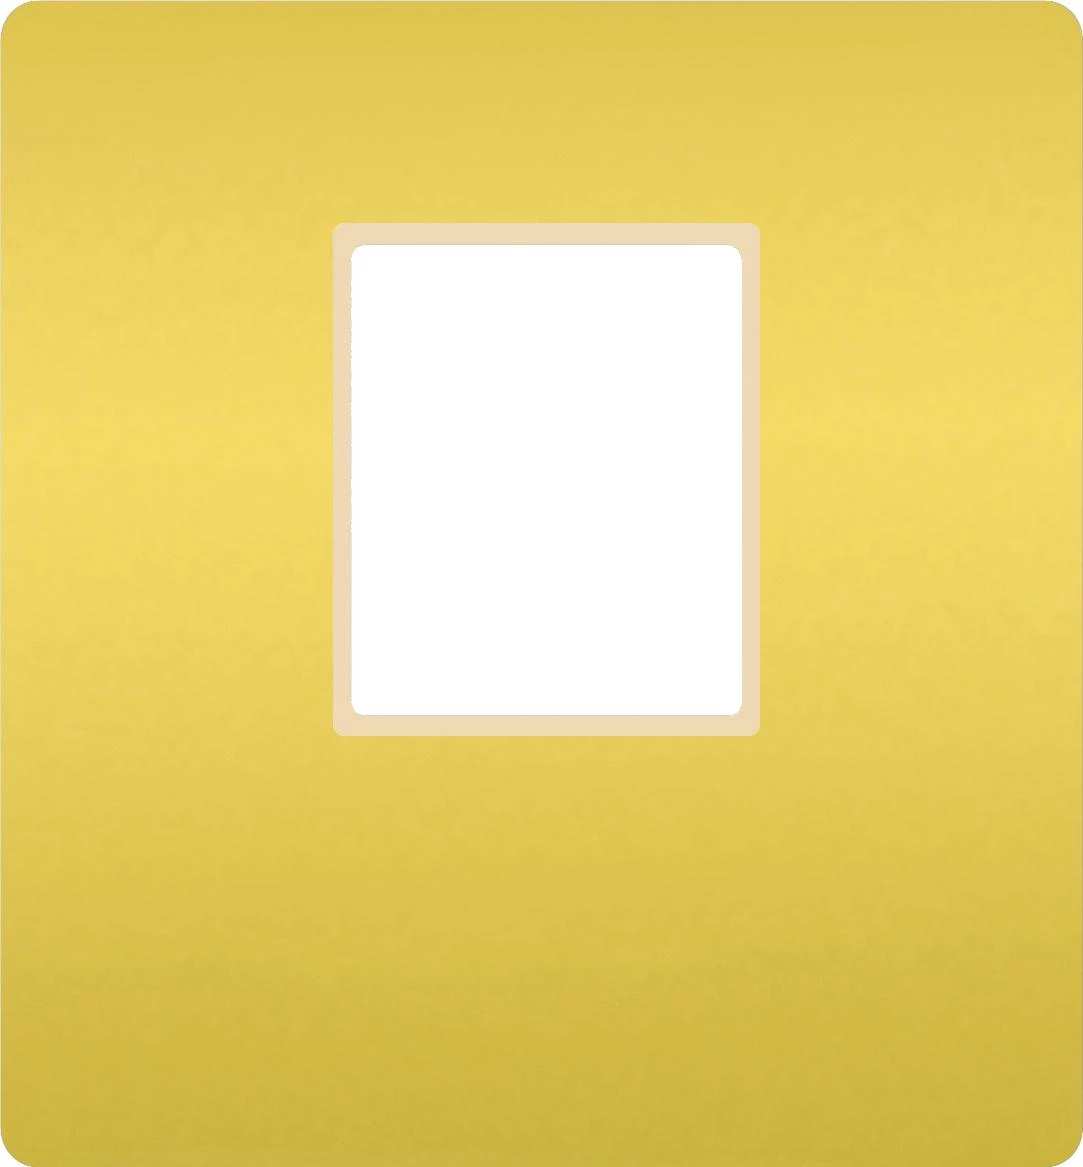  артикул FD04317OB-A название FEDE Светлое золото/ Беж. Монт. плата для 1-го инф. разъема RJ-45 Bright Gold (Oro Brillo)